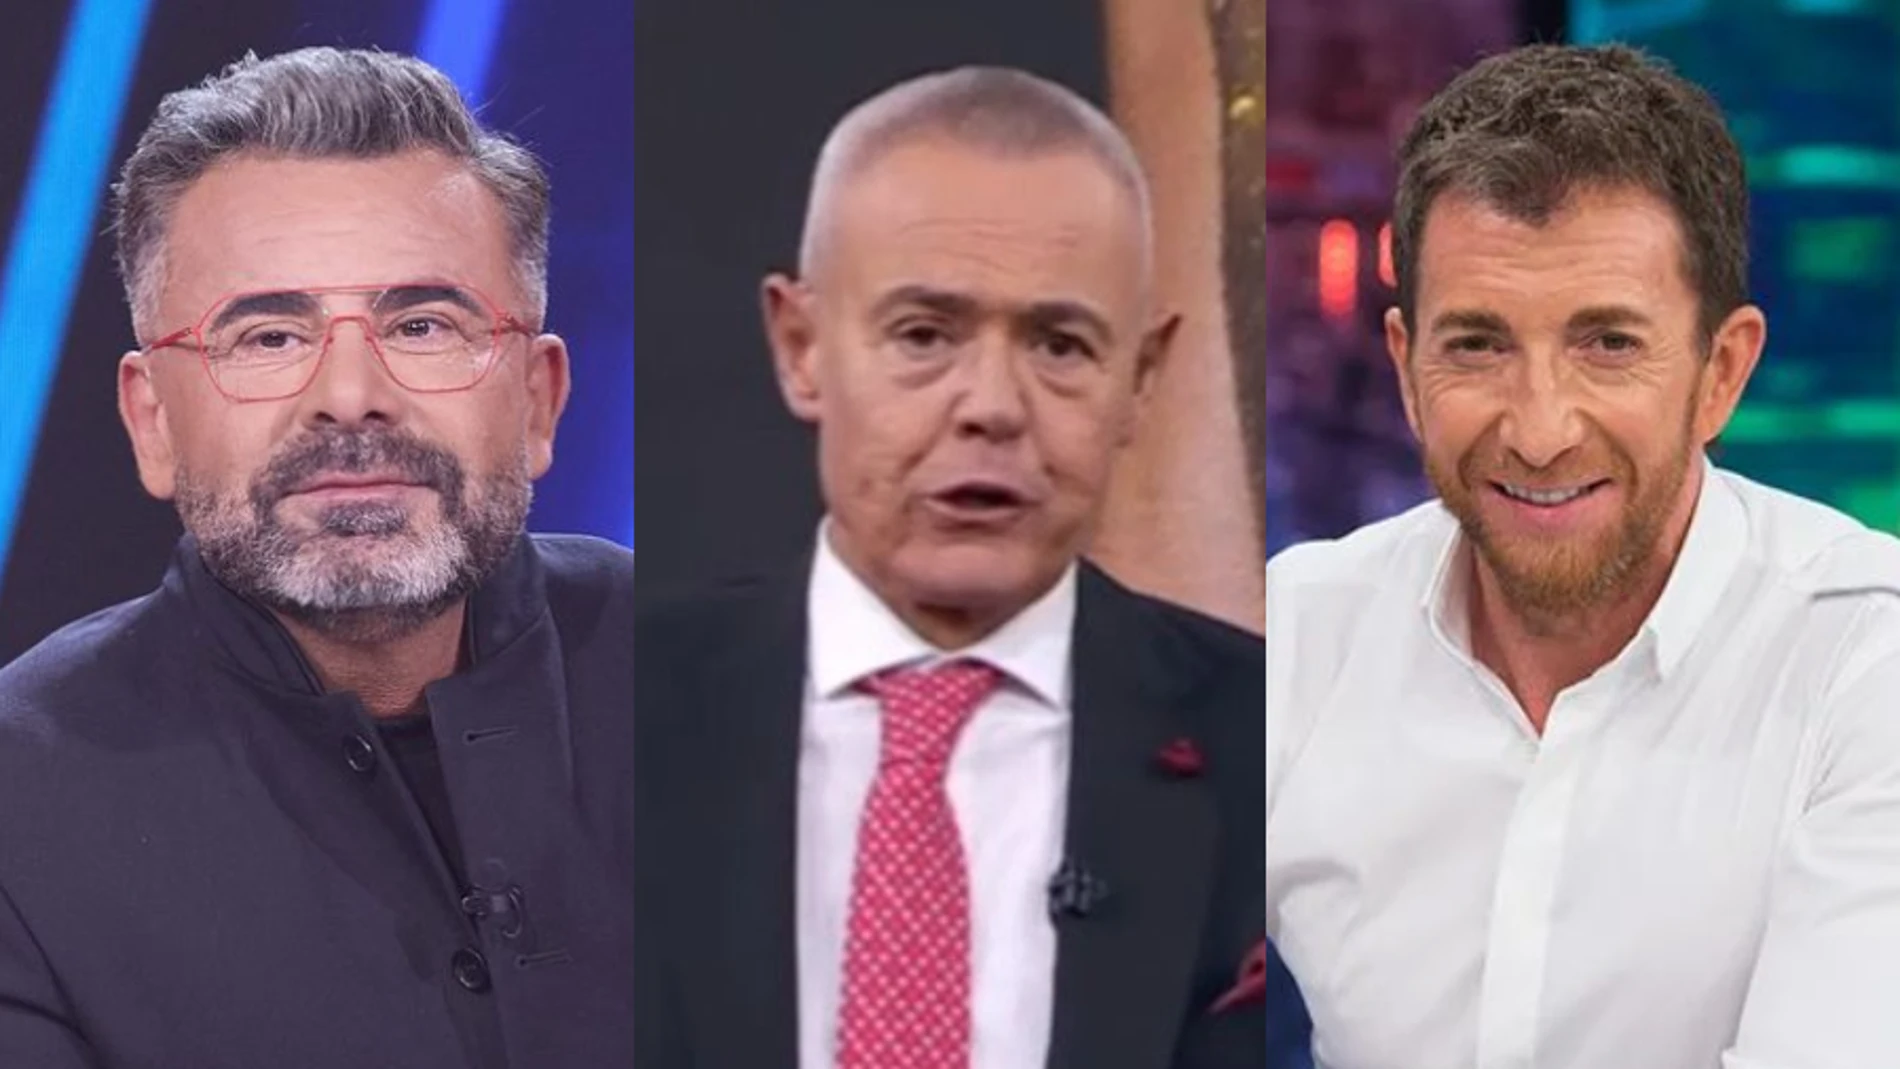 Joge Javier Vázquez, Jordi González y Pablo Motos, presentadores de televisión